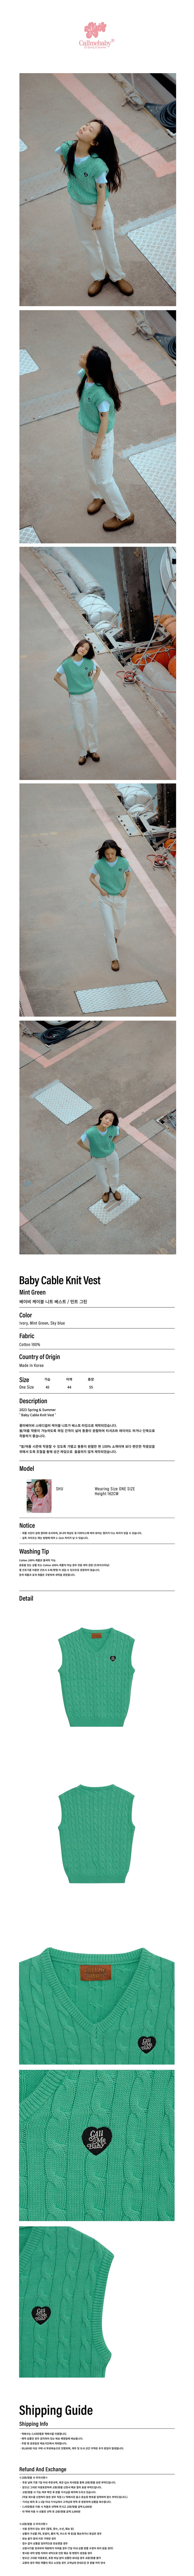 ベイビーケーブルニットベスト / Baby Cable Knit Vest _ Mint Green